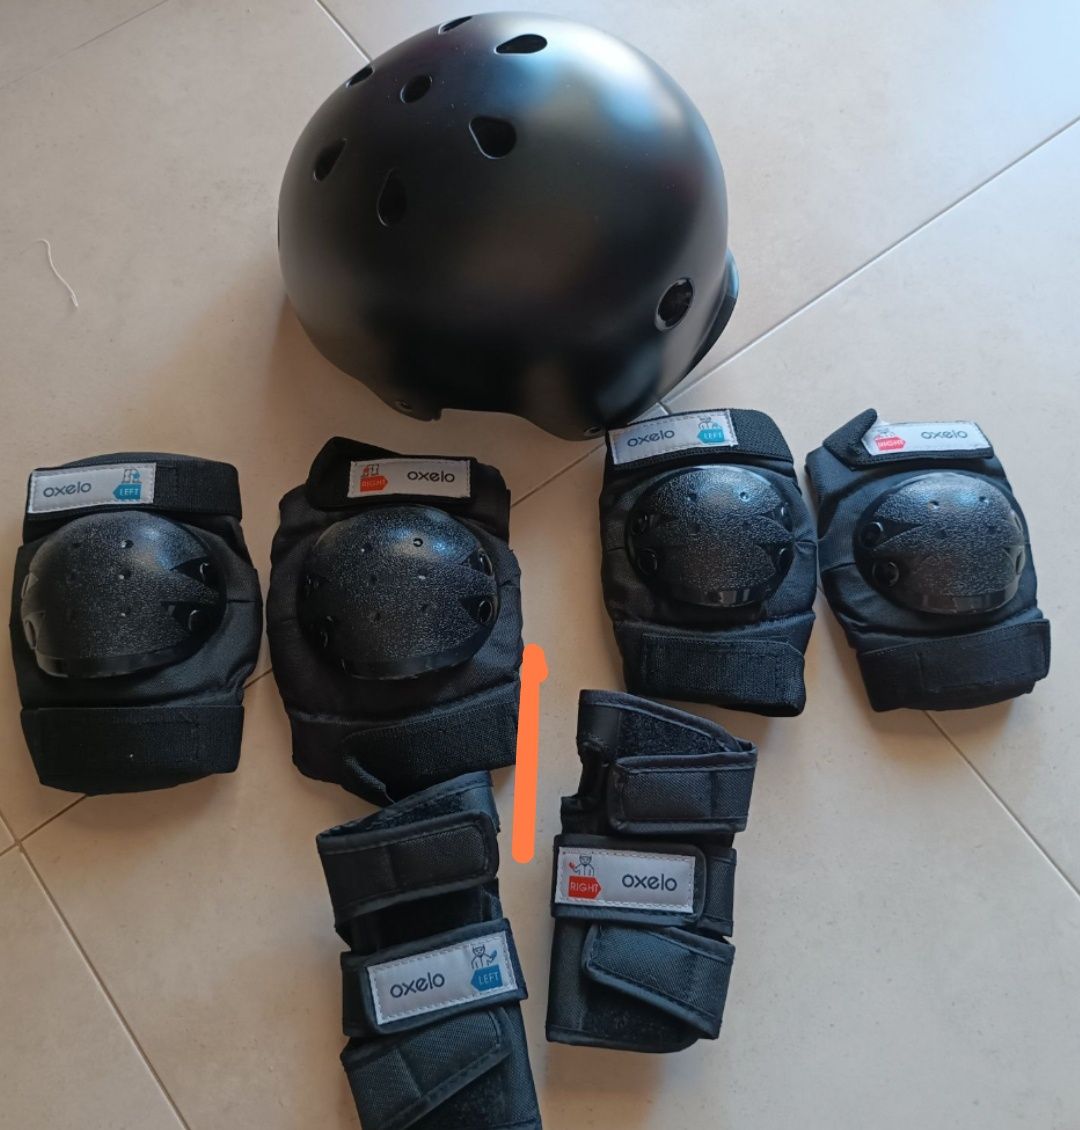 Trotinete oxelo Mid 1 + capacete e proteções